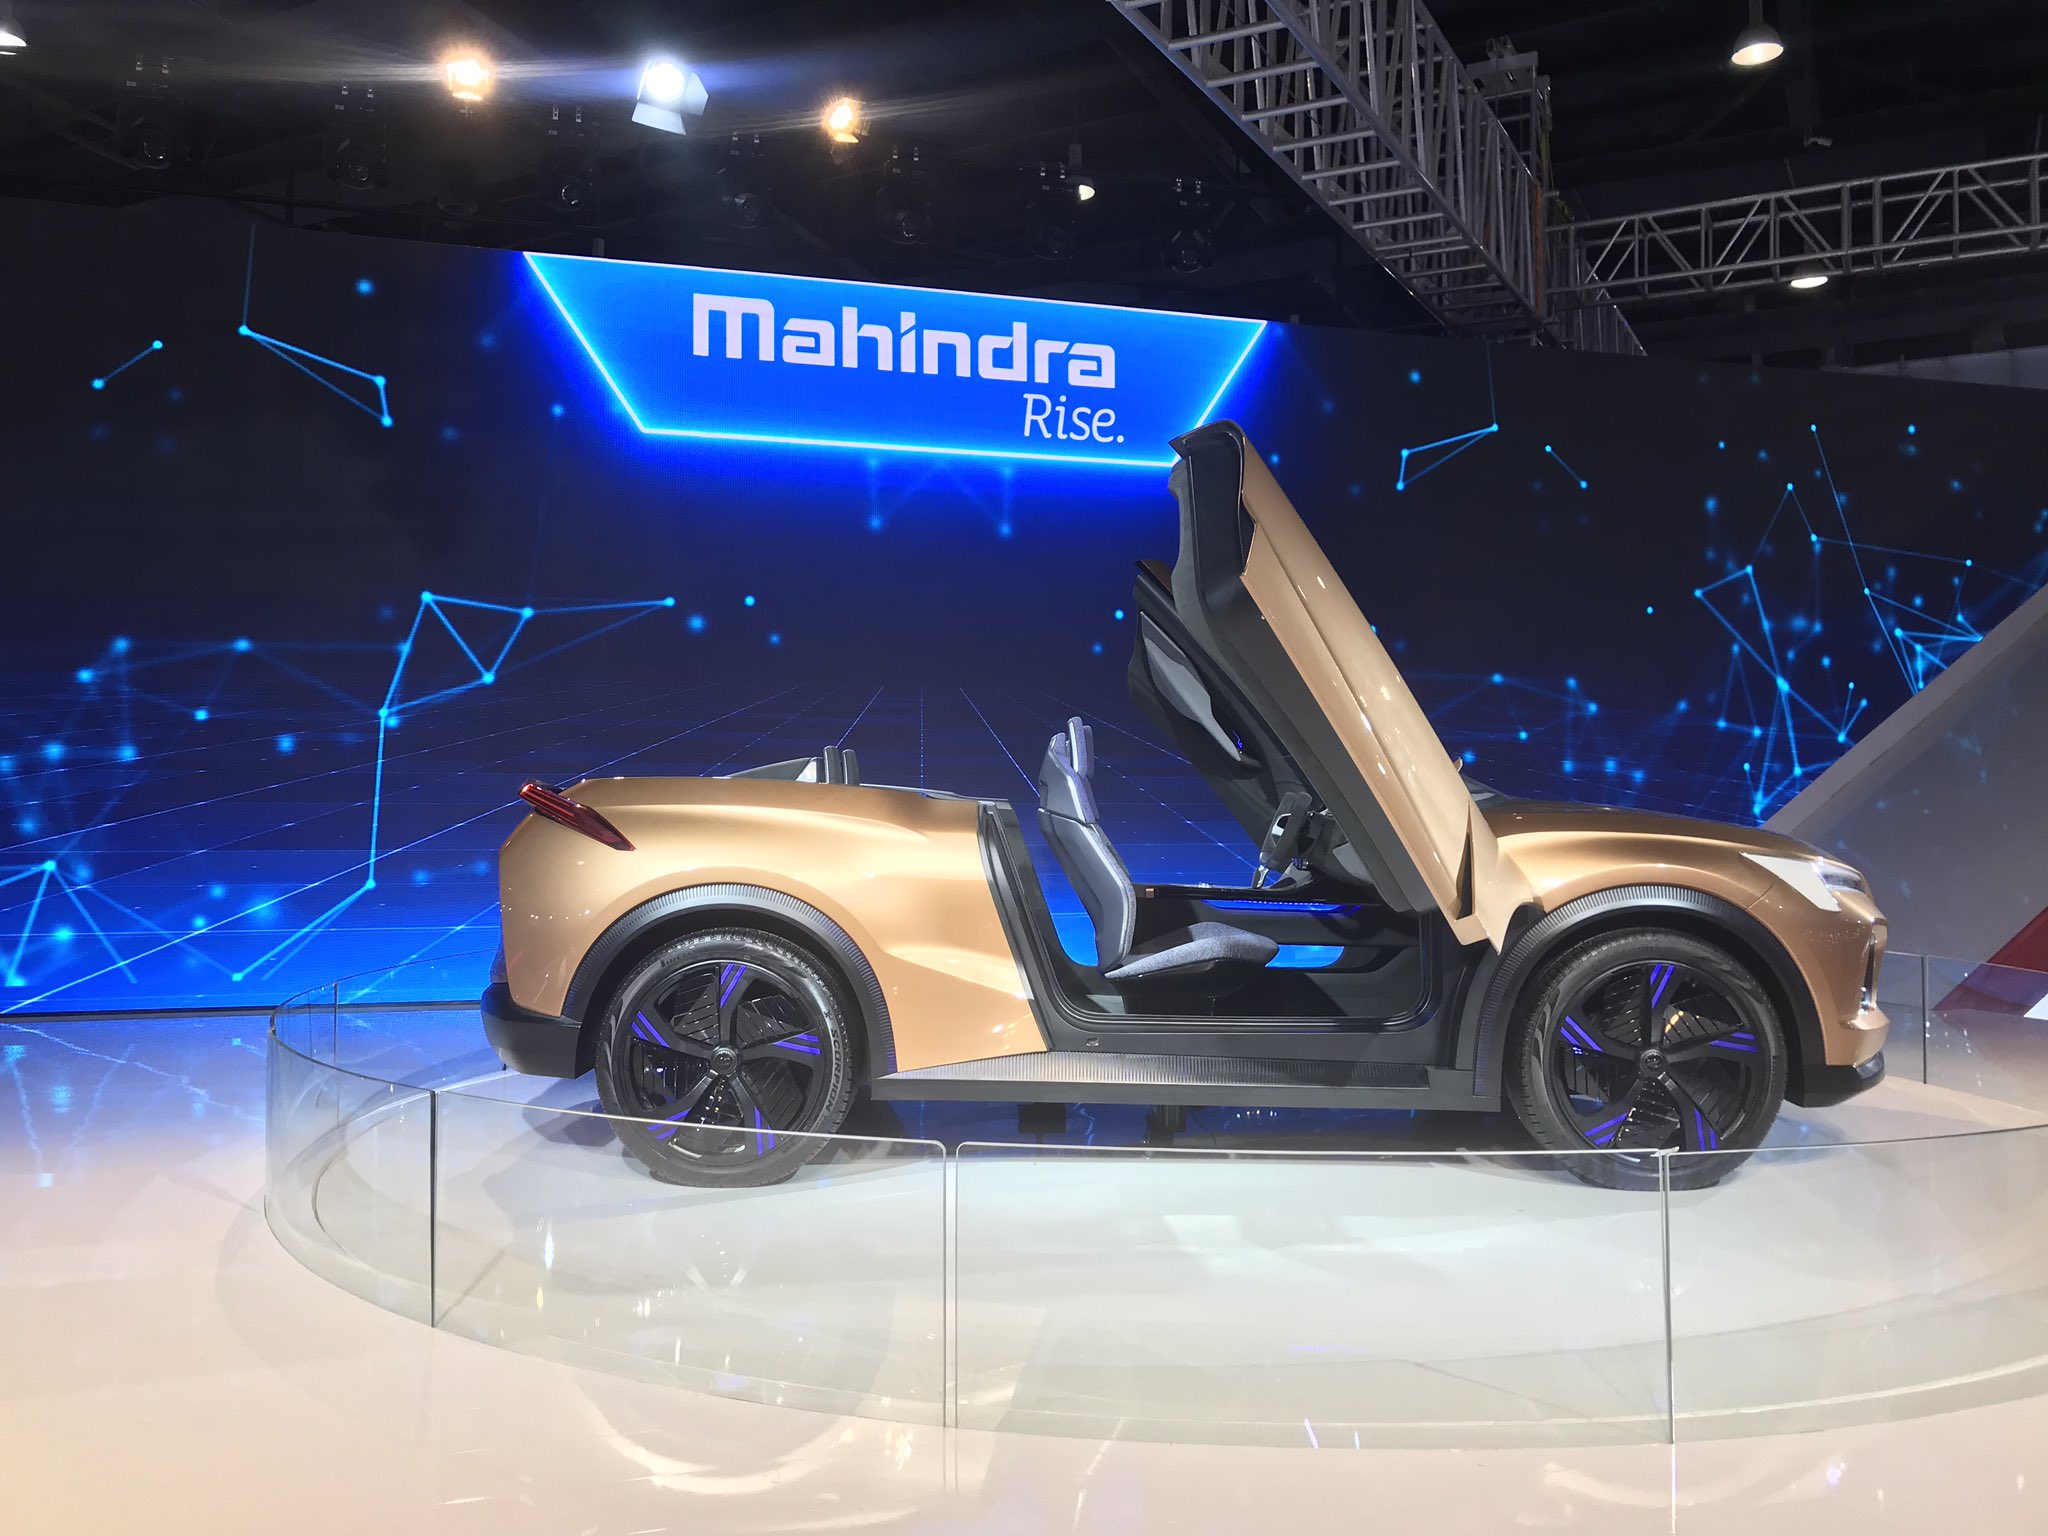 Mahindra and Mahindra कंपनीने पाच फेब्रुवारीपासून ग्रेटर नोएडामध्ये सुरू असलेल्या ऑटो एक्सपो 2020 मध्ये एकाहून एक शानदार गाड्या सादर केल्या आहेत. ((सर्व छायाचित्र सौजन्य - ट्विटर आणि @AEMotorShow))